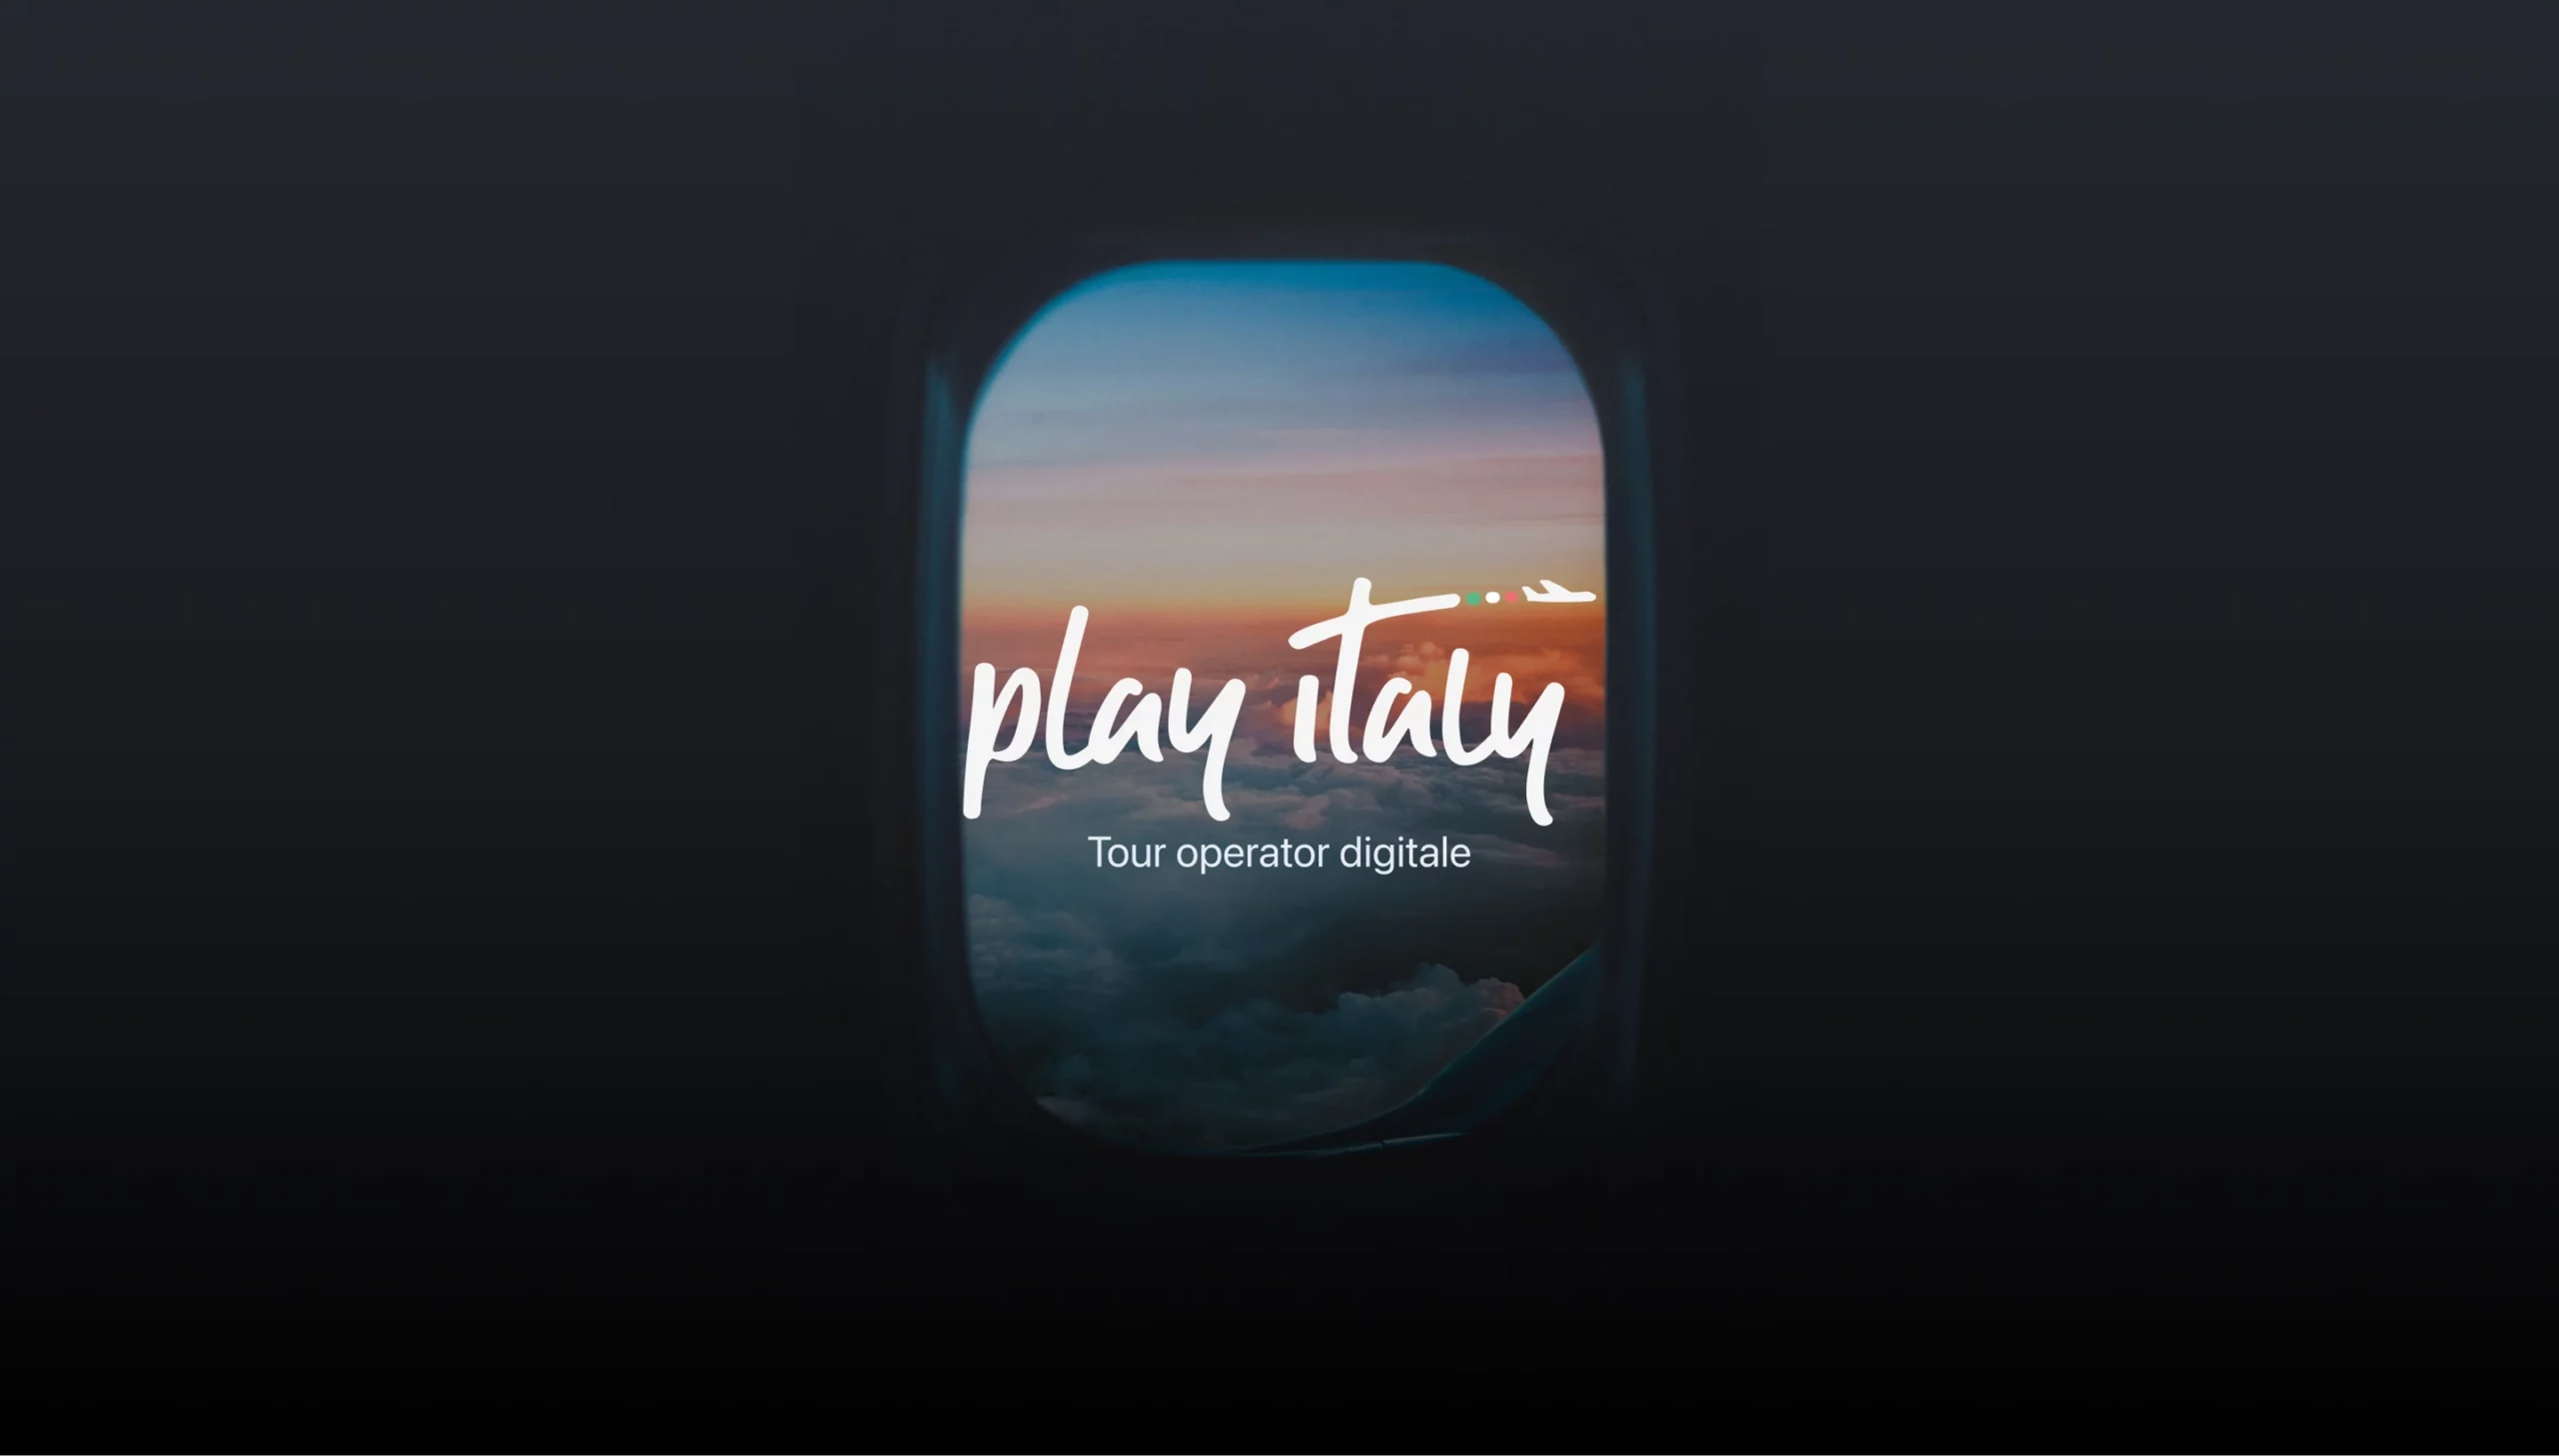 La sinergia tra Leviathan e Play Italy: la nascita di un nuovo brand travel